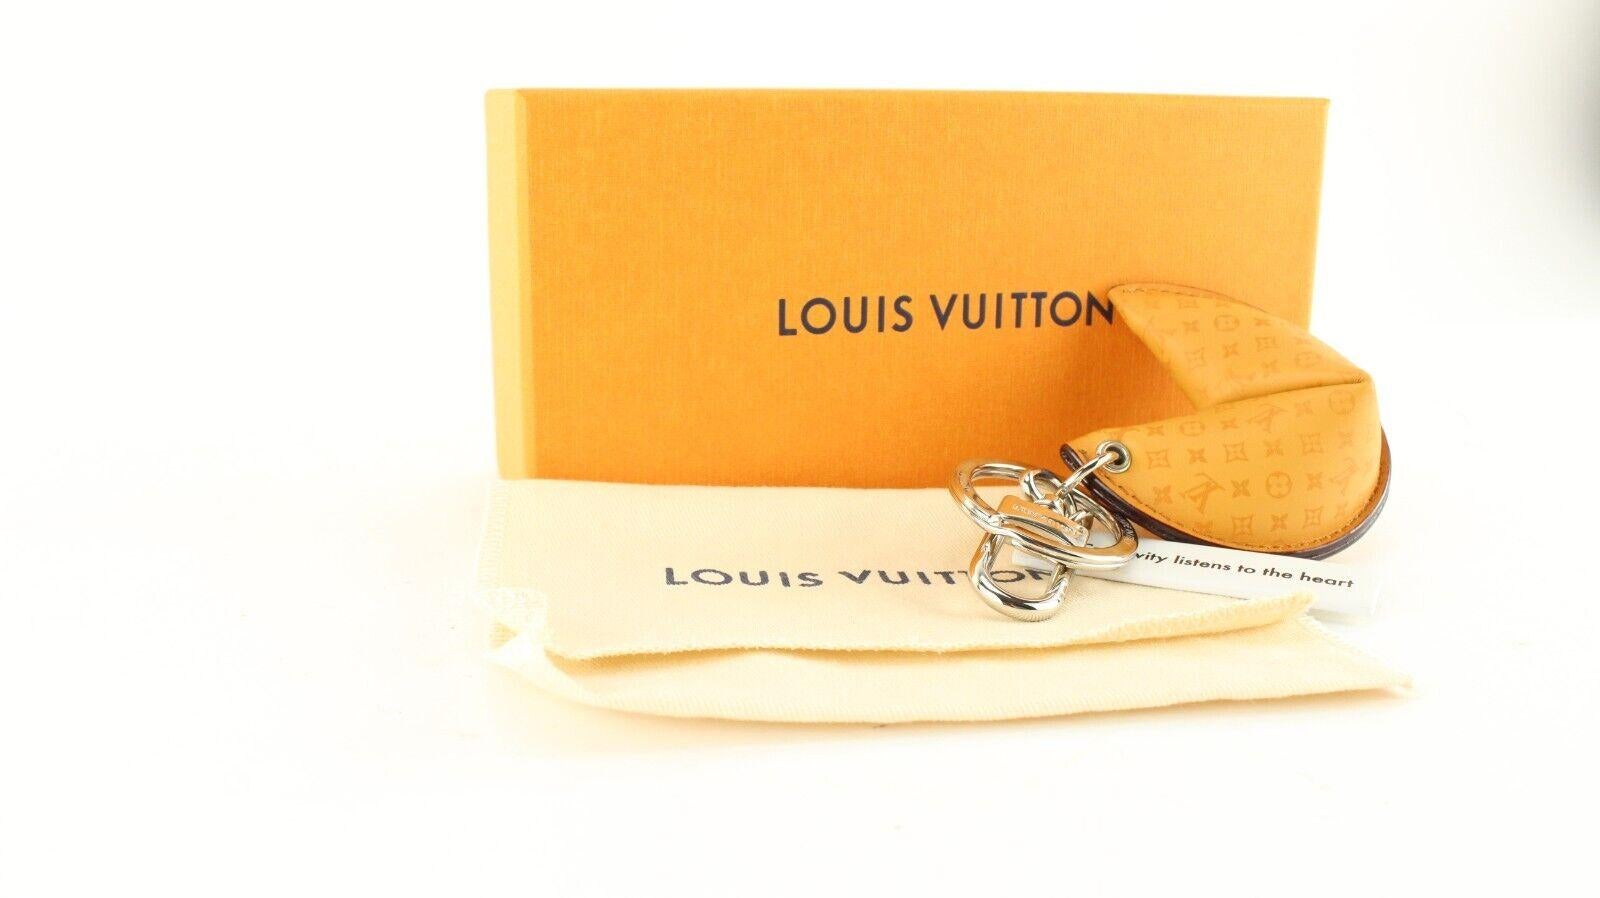 Shop Louis Vuitton Louis Vuitton LV NEW WAVE CHAIN BAG by Bellaris